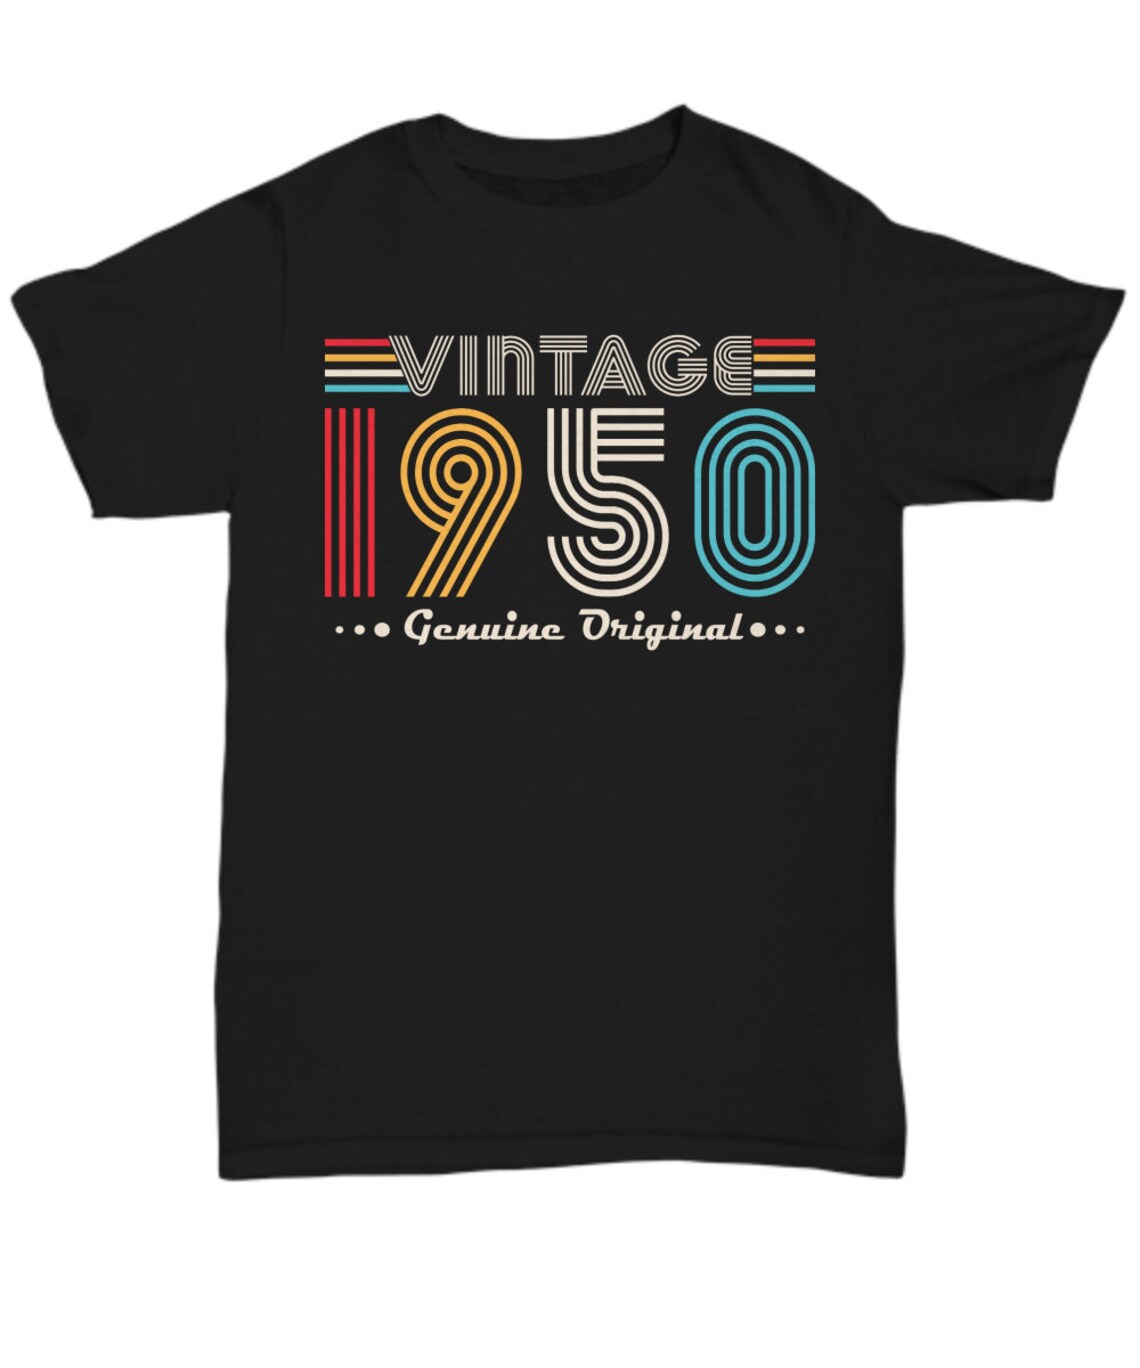 Born in 1950 1950 Birthday 1950 Shirt 1950 Vintage 1950 - Etsy